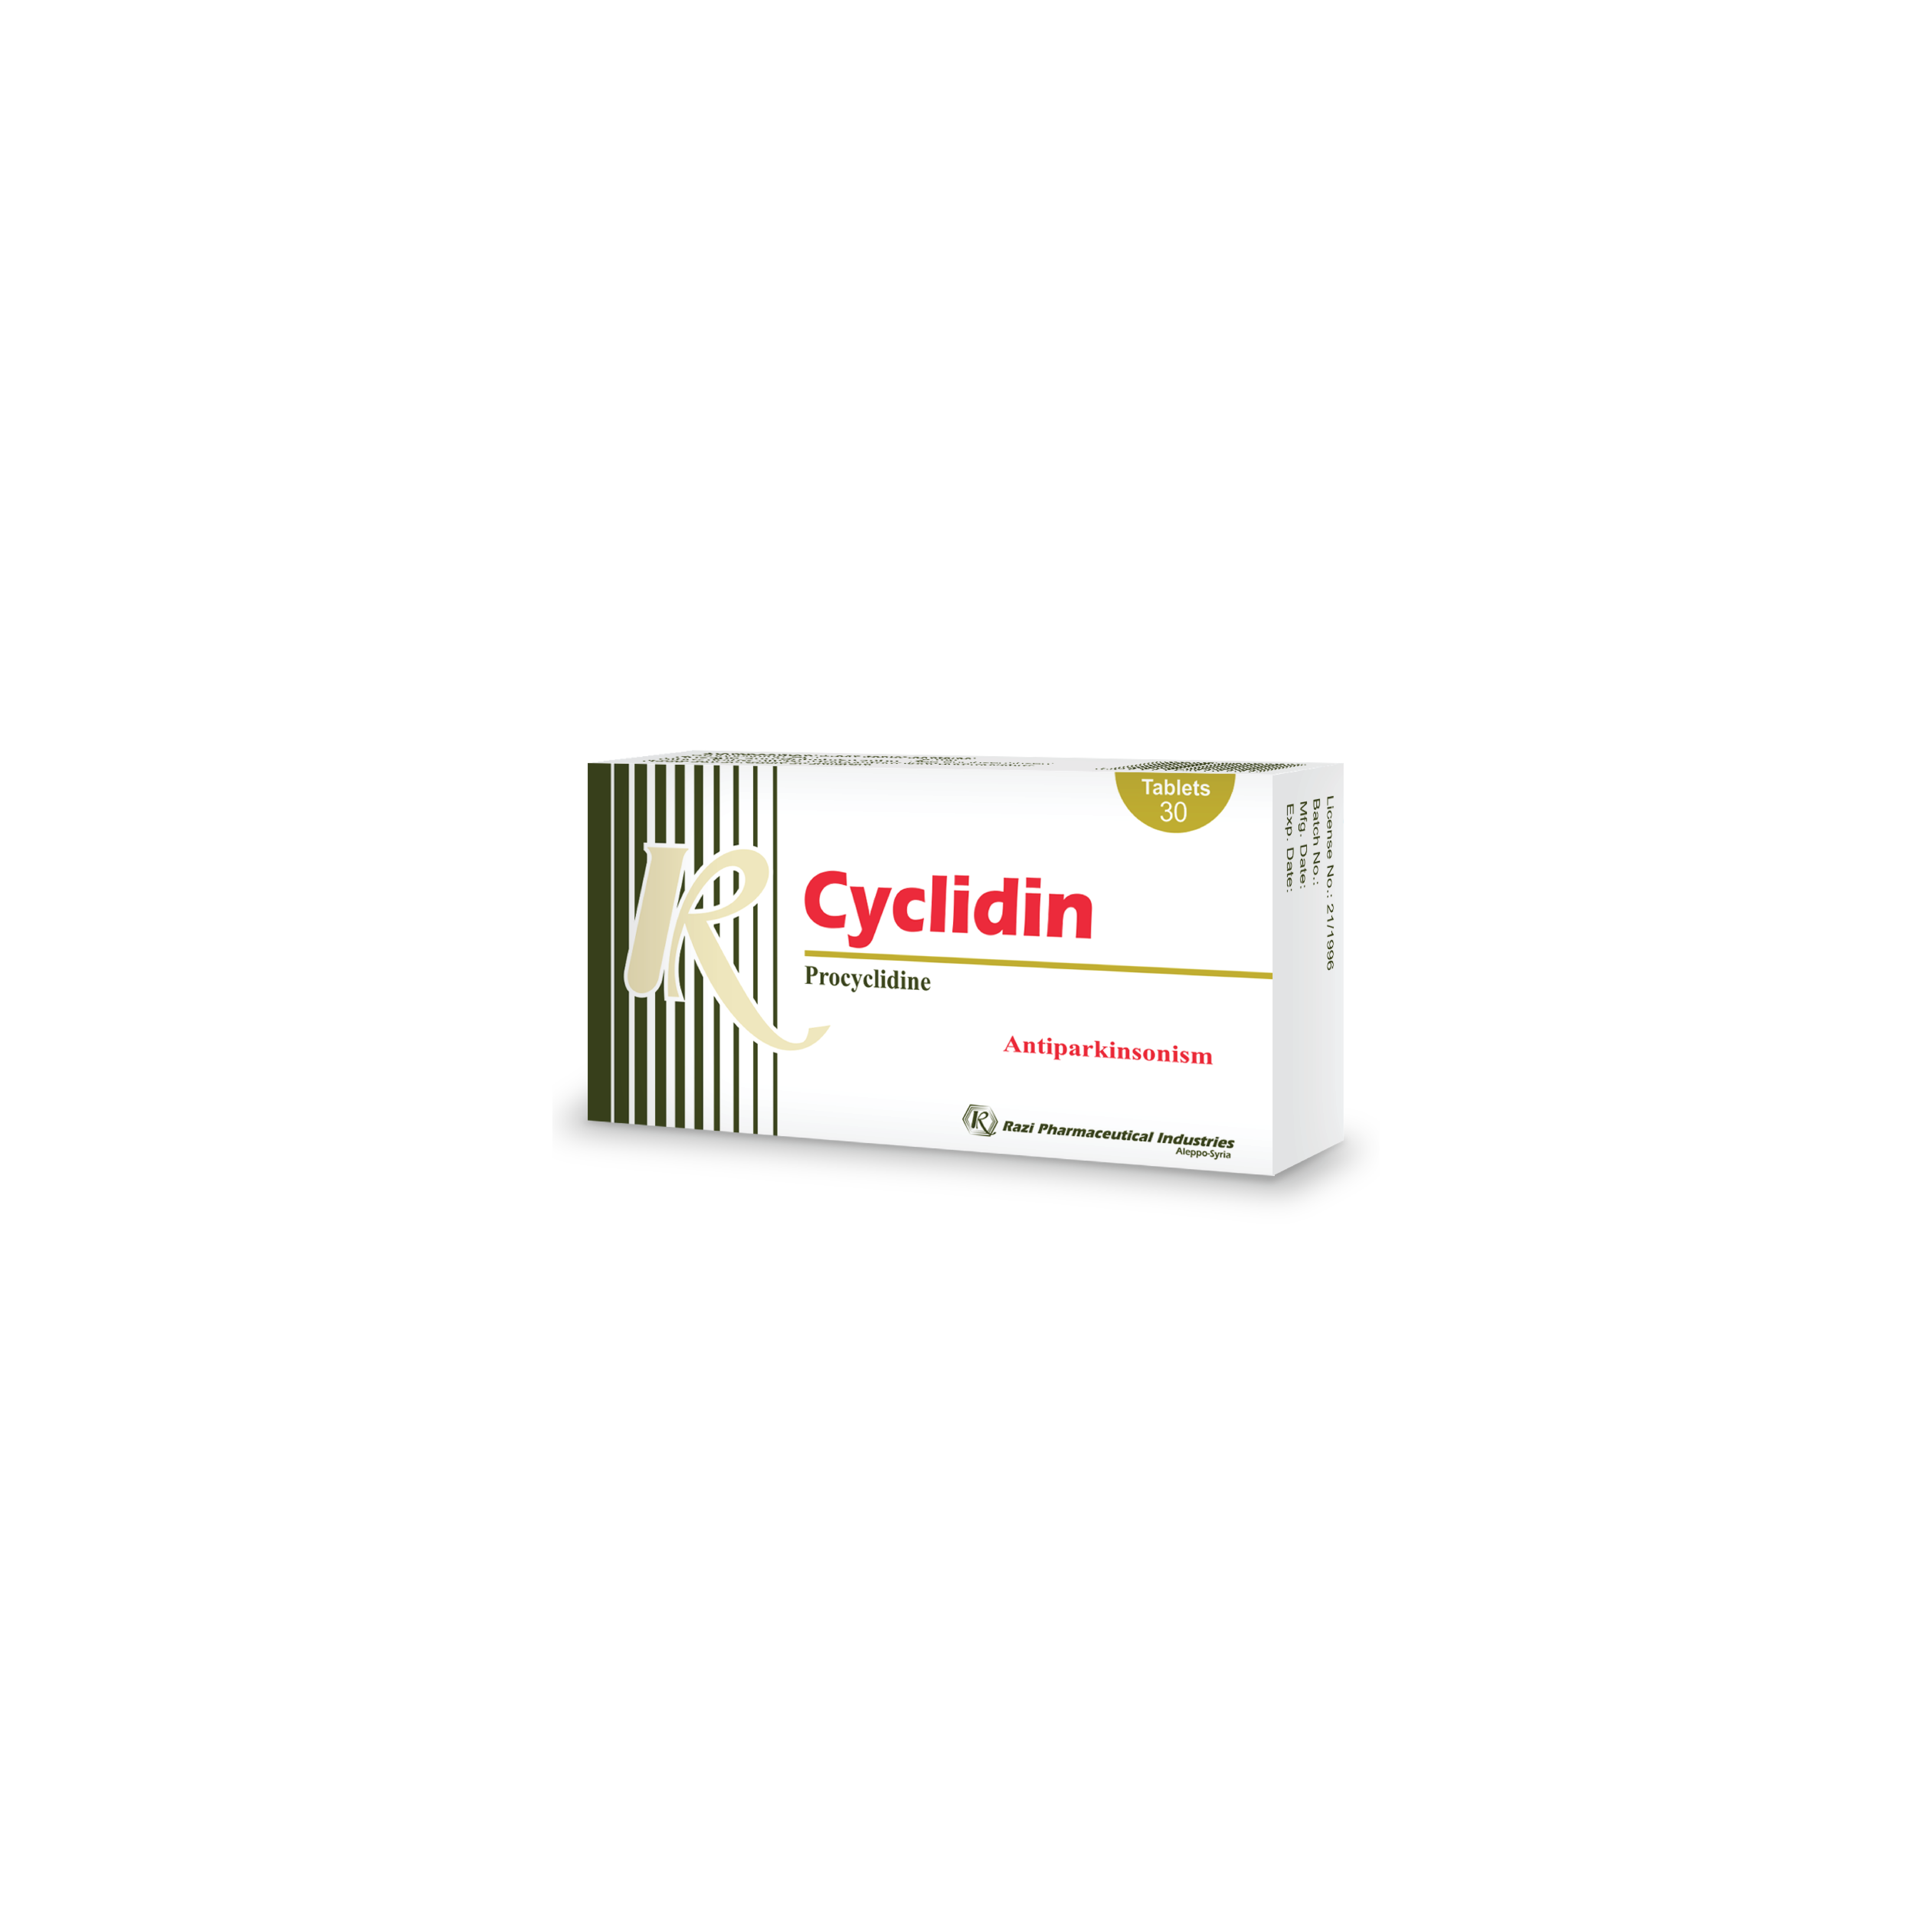 Cyclidin